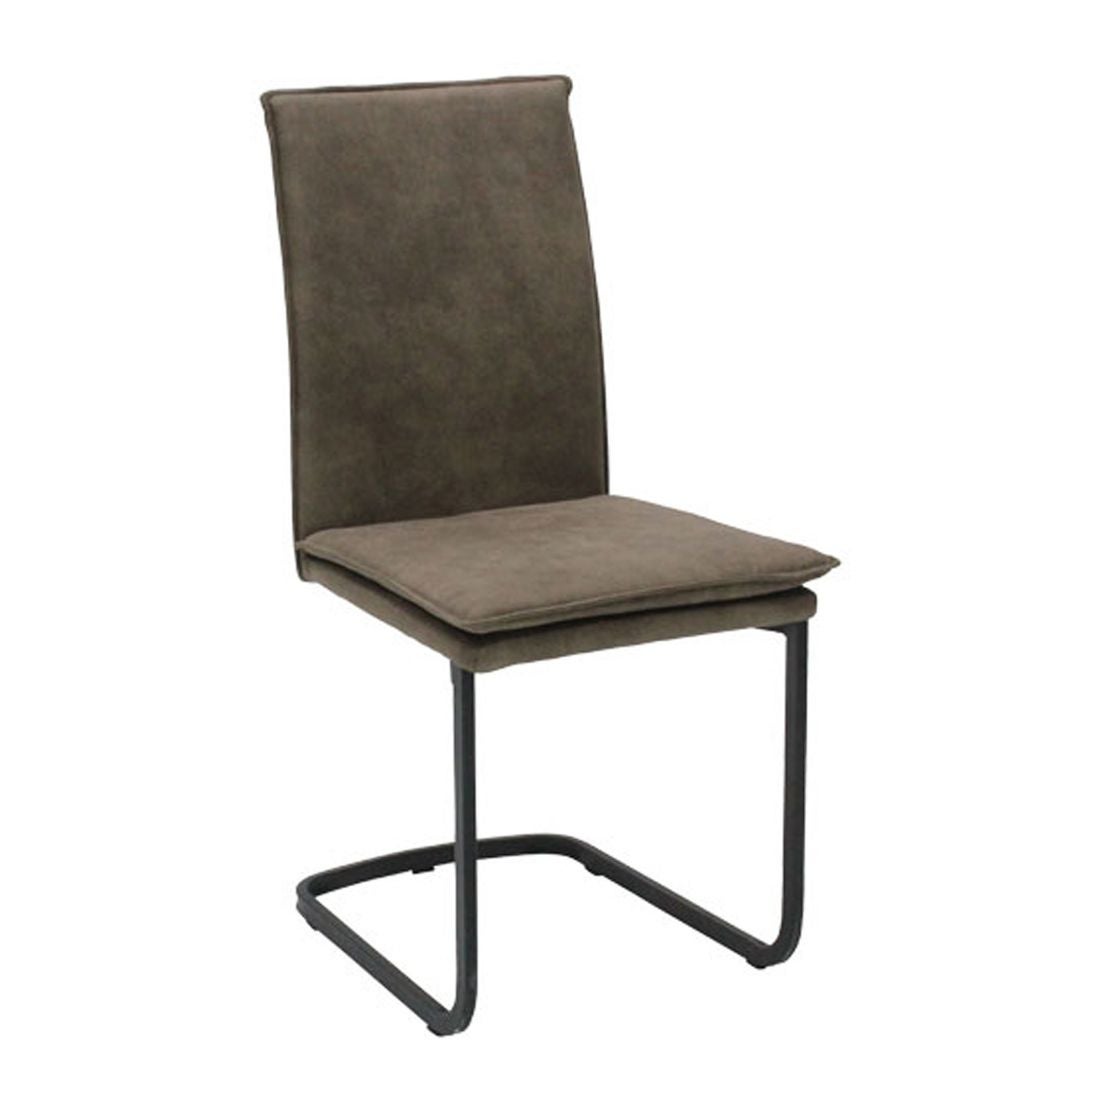 เก้าอี้ทานอาหาร เก้าอี้เหล็กเบาะผ้า รุ่น Tact-SB Design Square